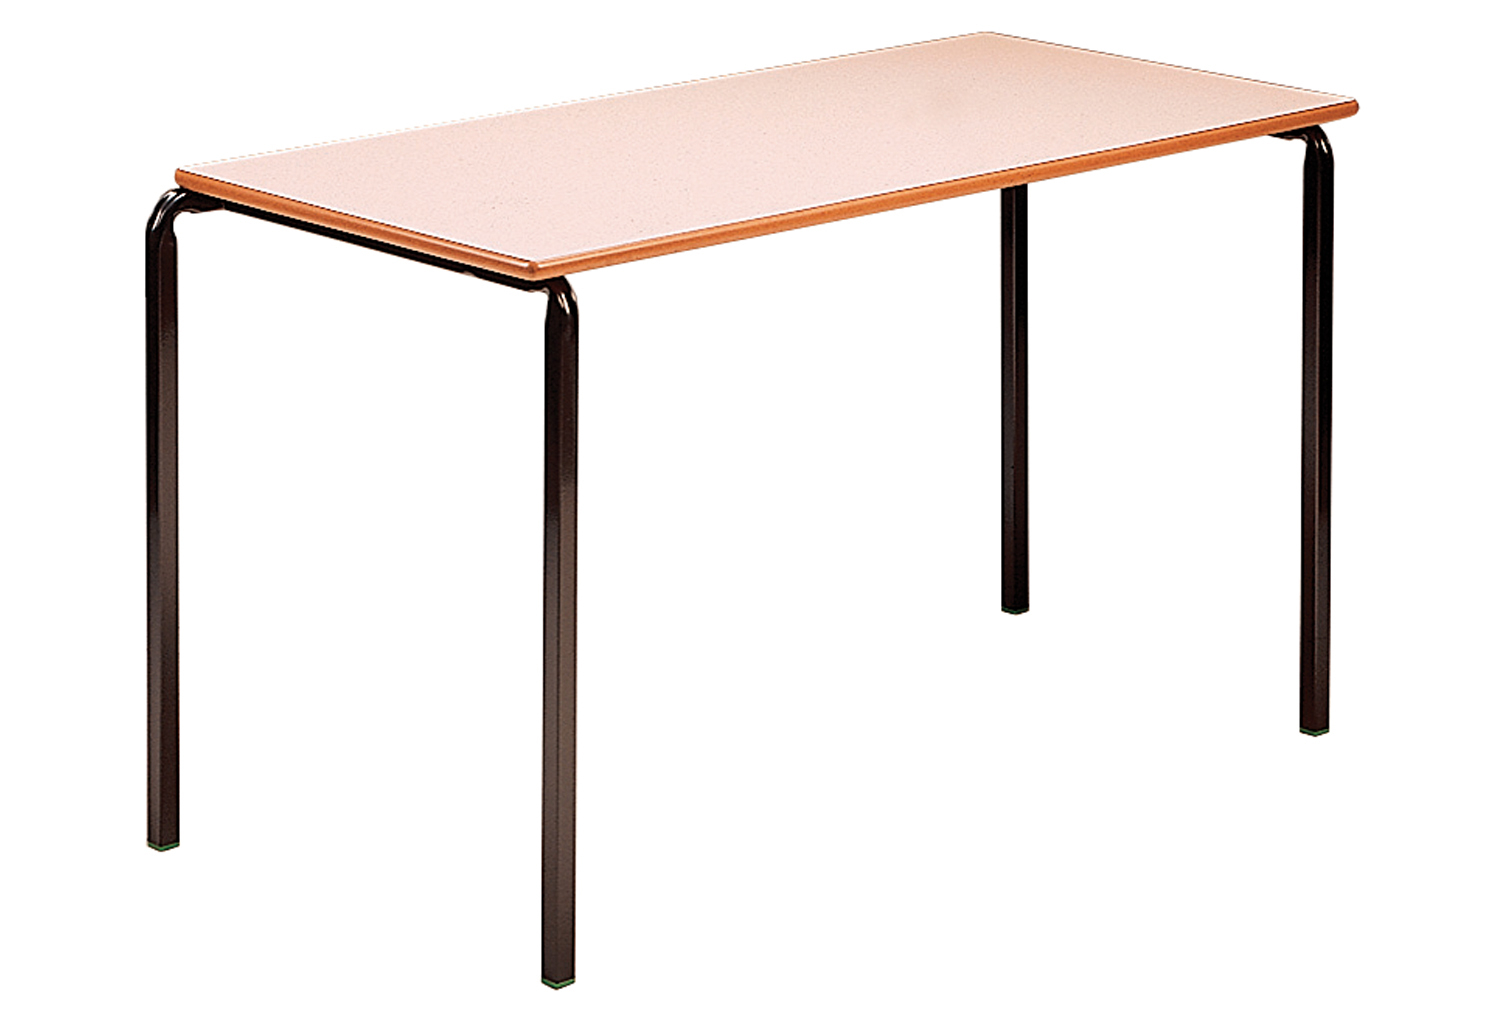 Qty 4 - Rectangular Crush Bent Classroom Tables 8-11 Years, 110wx55dx64h (cm), Light Grey Frame, Beech Top, ABS Beech Edge